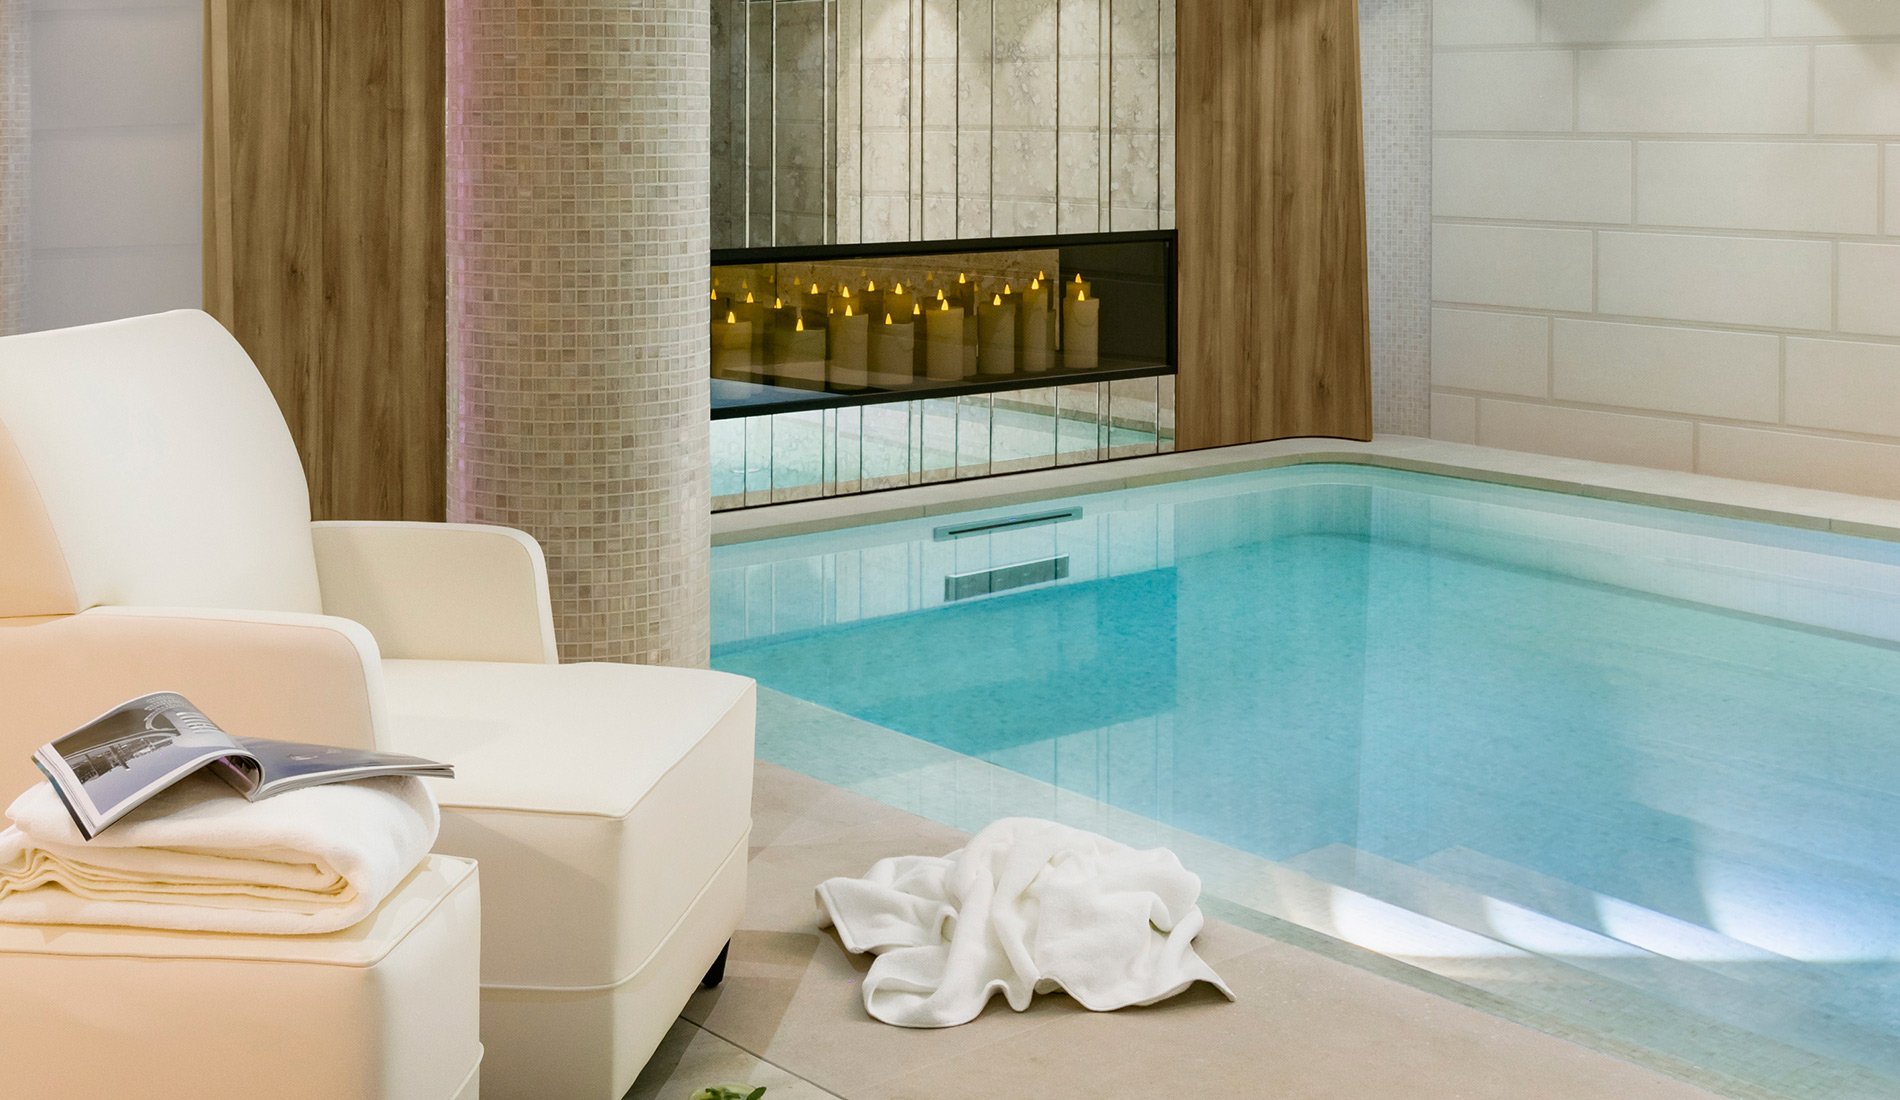 Luxury hotel - Maison Albar Hotels Le Pont-Neuf - 5-star - indoor pool